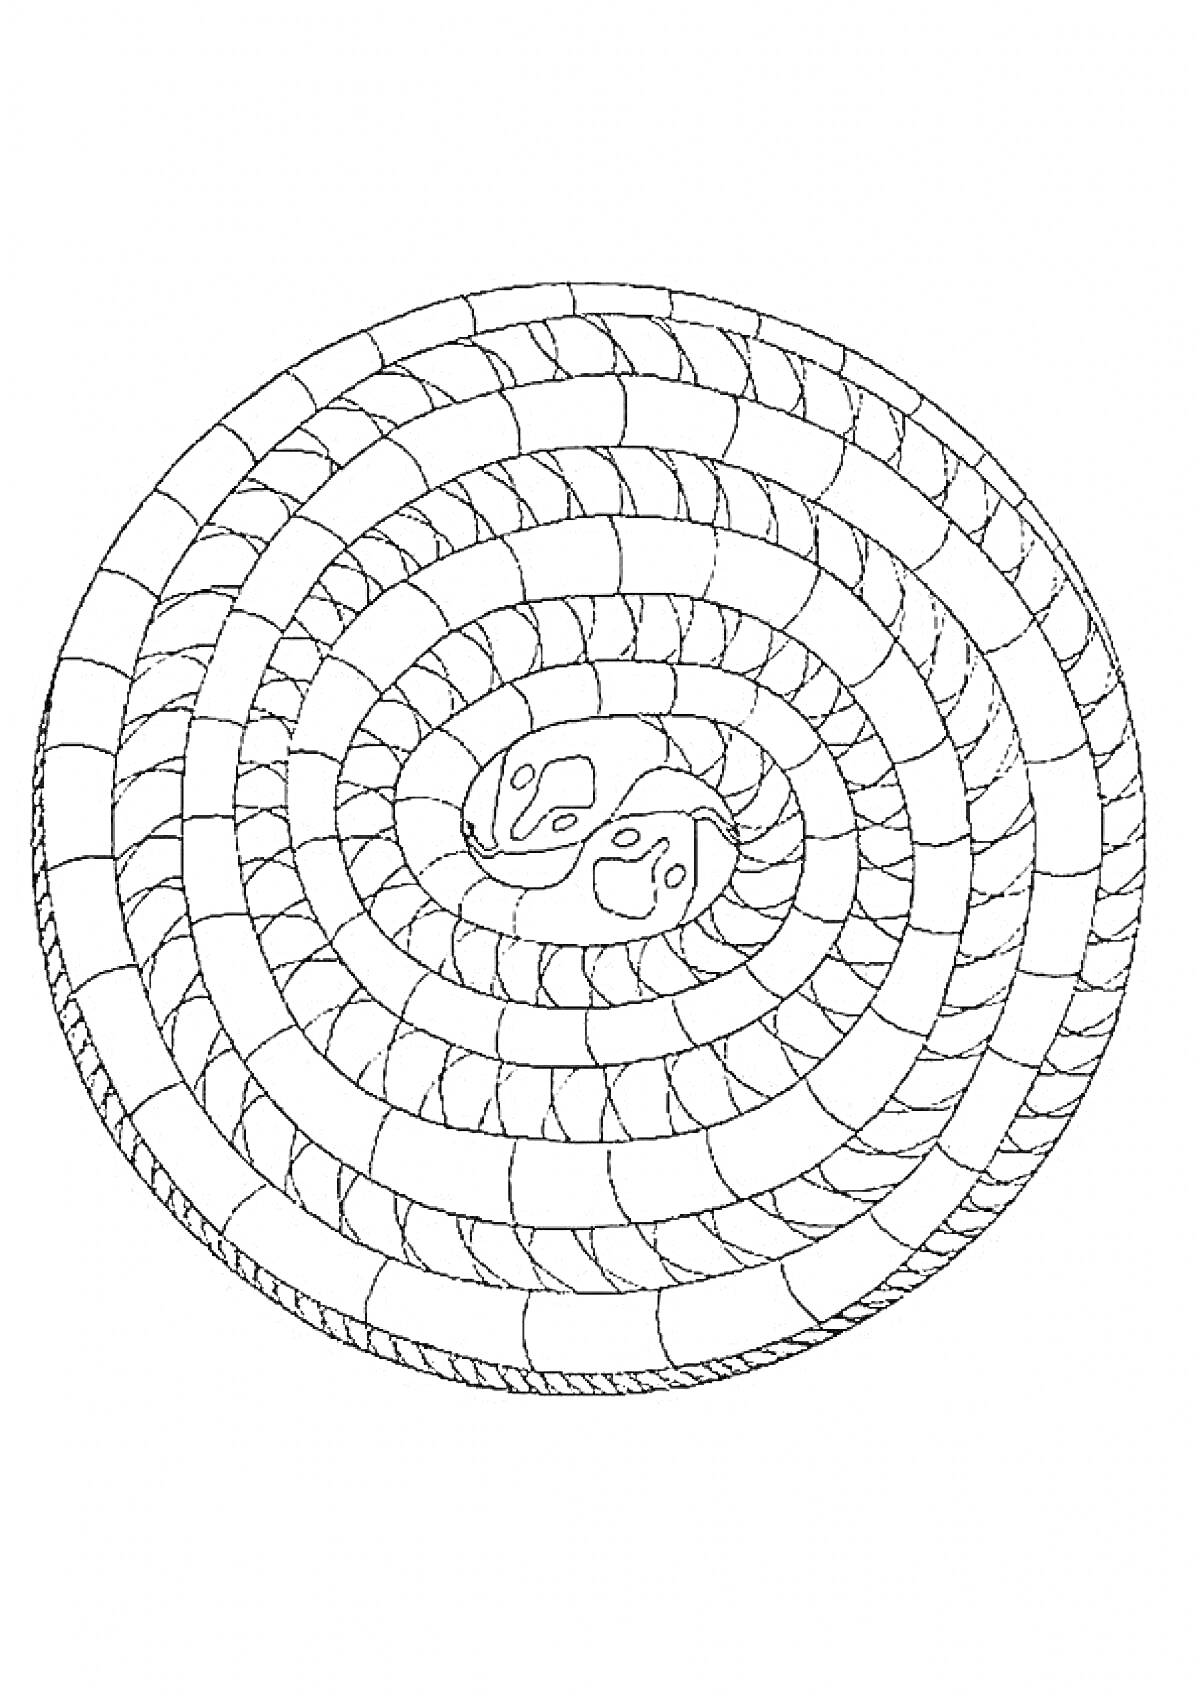 Спиральная раскраска с зигзагообразным узором и элементами Инь-Ян в центре